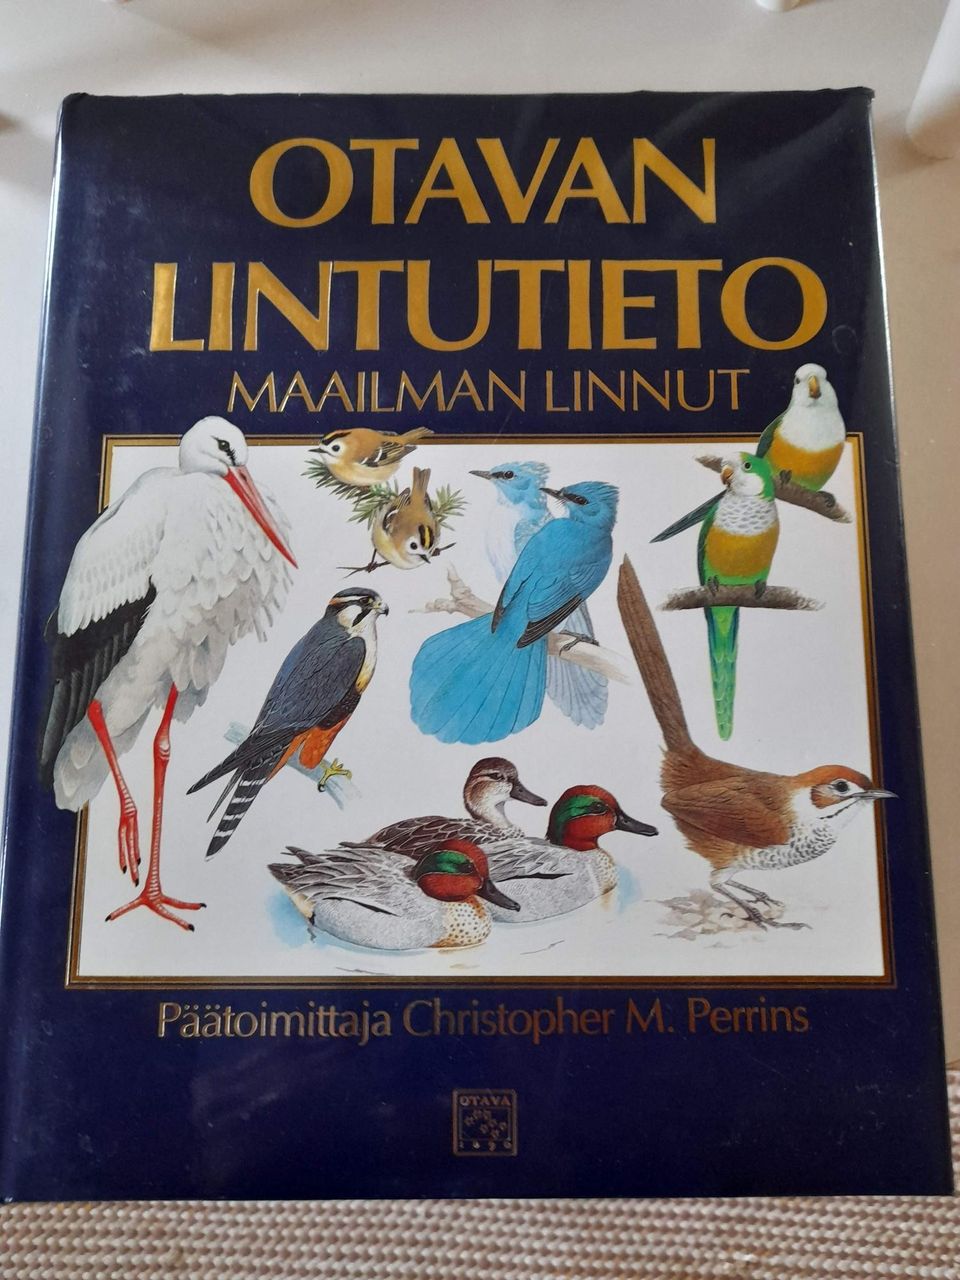 Otavan lintutieto maailman linnut